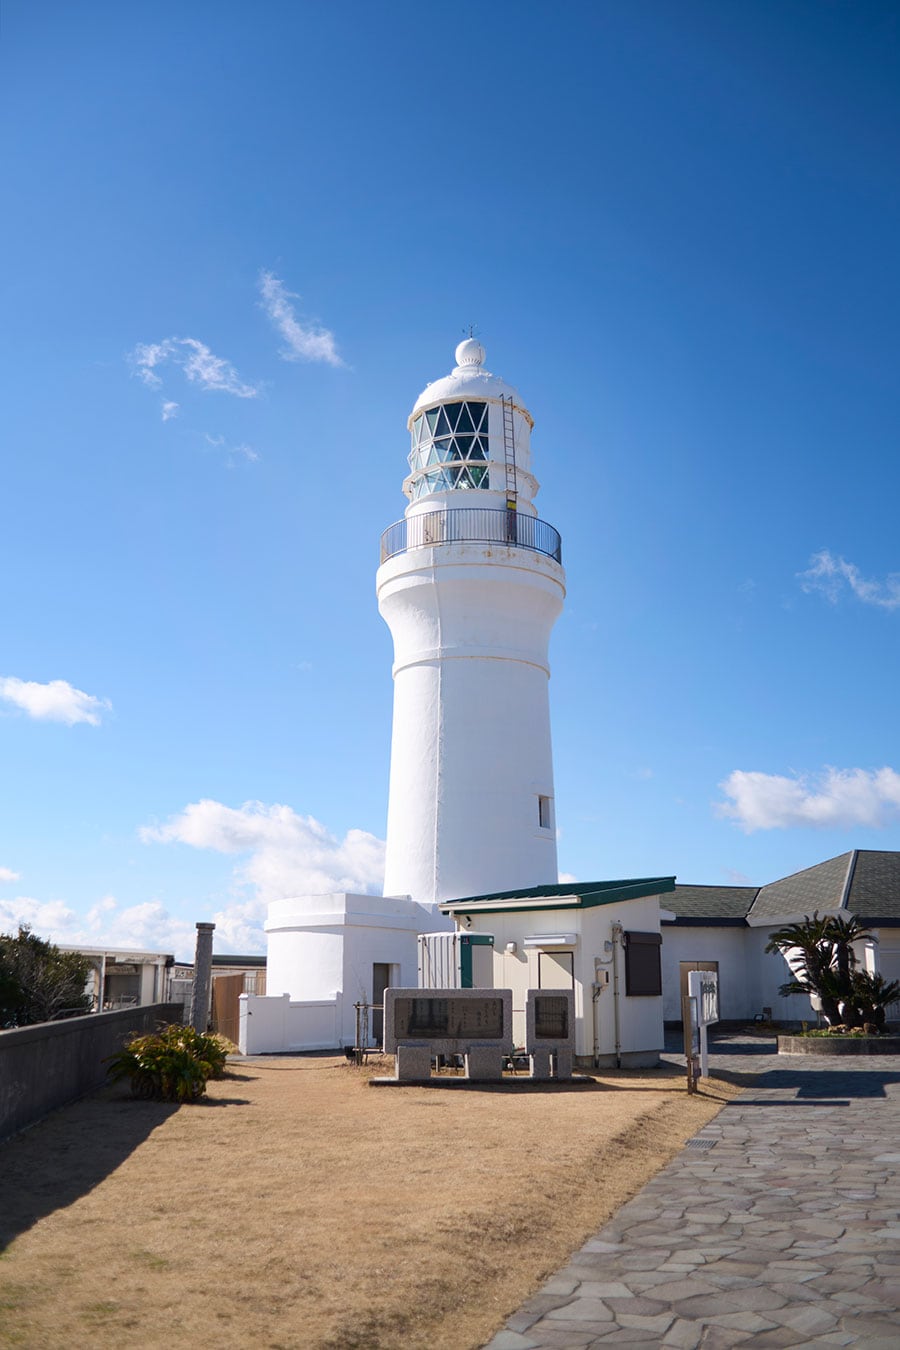 御前埼灯台は2021年に灯台と旧官舎が重要文化財となった。